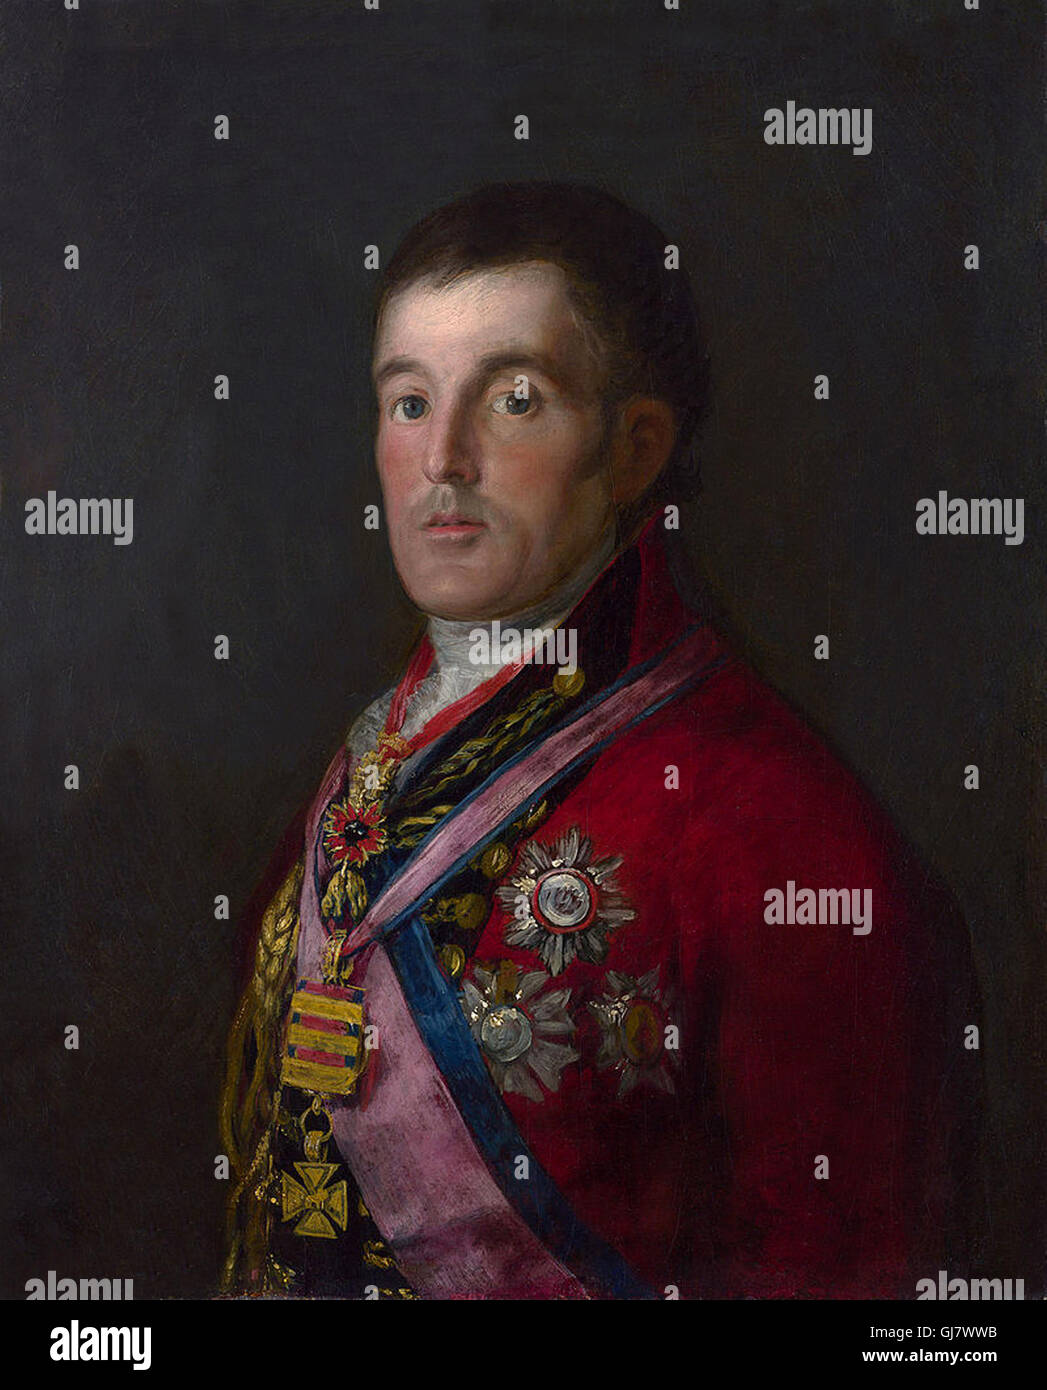 Feldmarschall Arthur Wellesley 1. Duke of Wellington tragen Feldmarschall-uniform. Porträt von Francisco Goya, 1812 – 14.  Feldmarschall Arthur Wellesley, 1. Duke of Wellington (1. Mai 1769 – 14. September 1852) war ein Anglo-Irischer Soldat und Staatsmann und einer der militärischen und politischen Persönlichkeiten des 19. Jahrhunderts Großbritanniens. Stockfoto